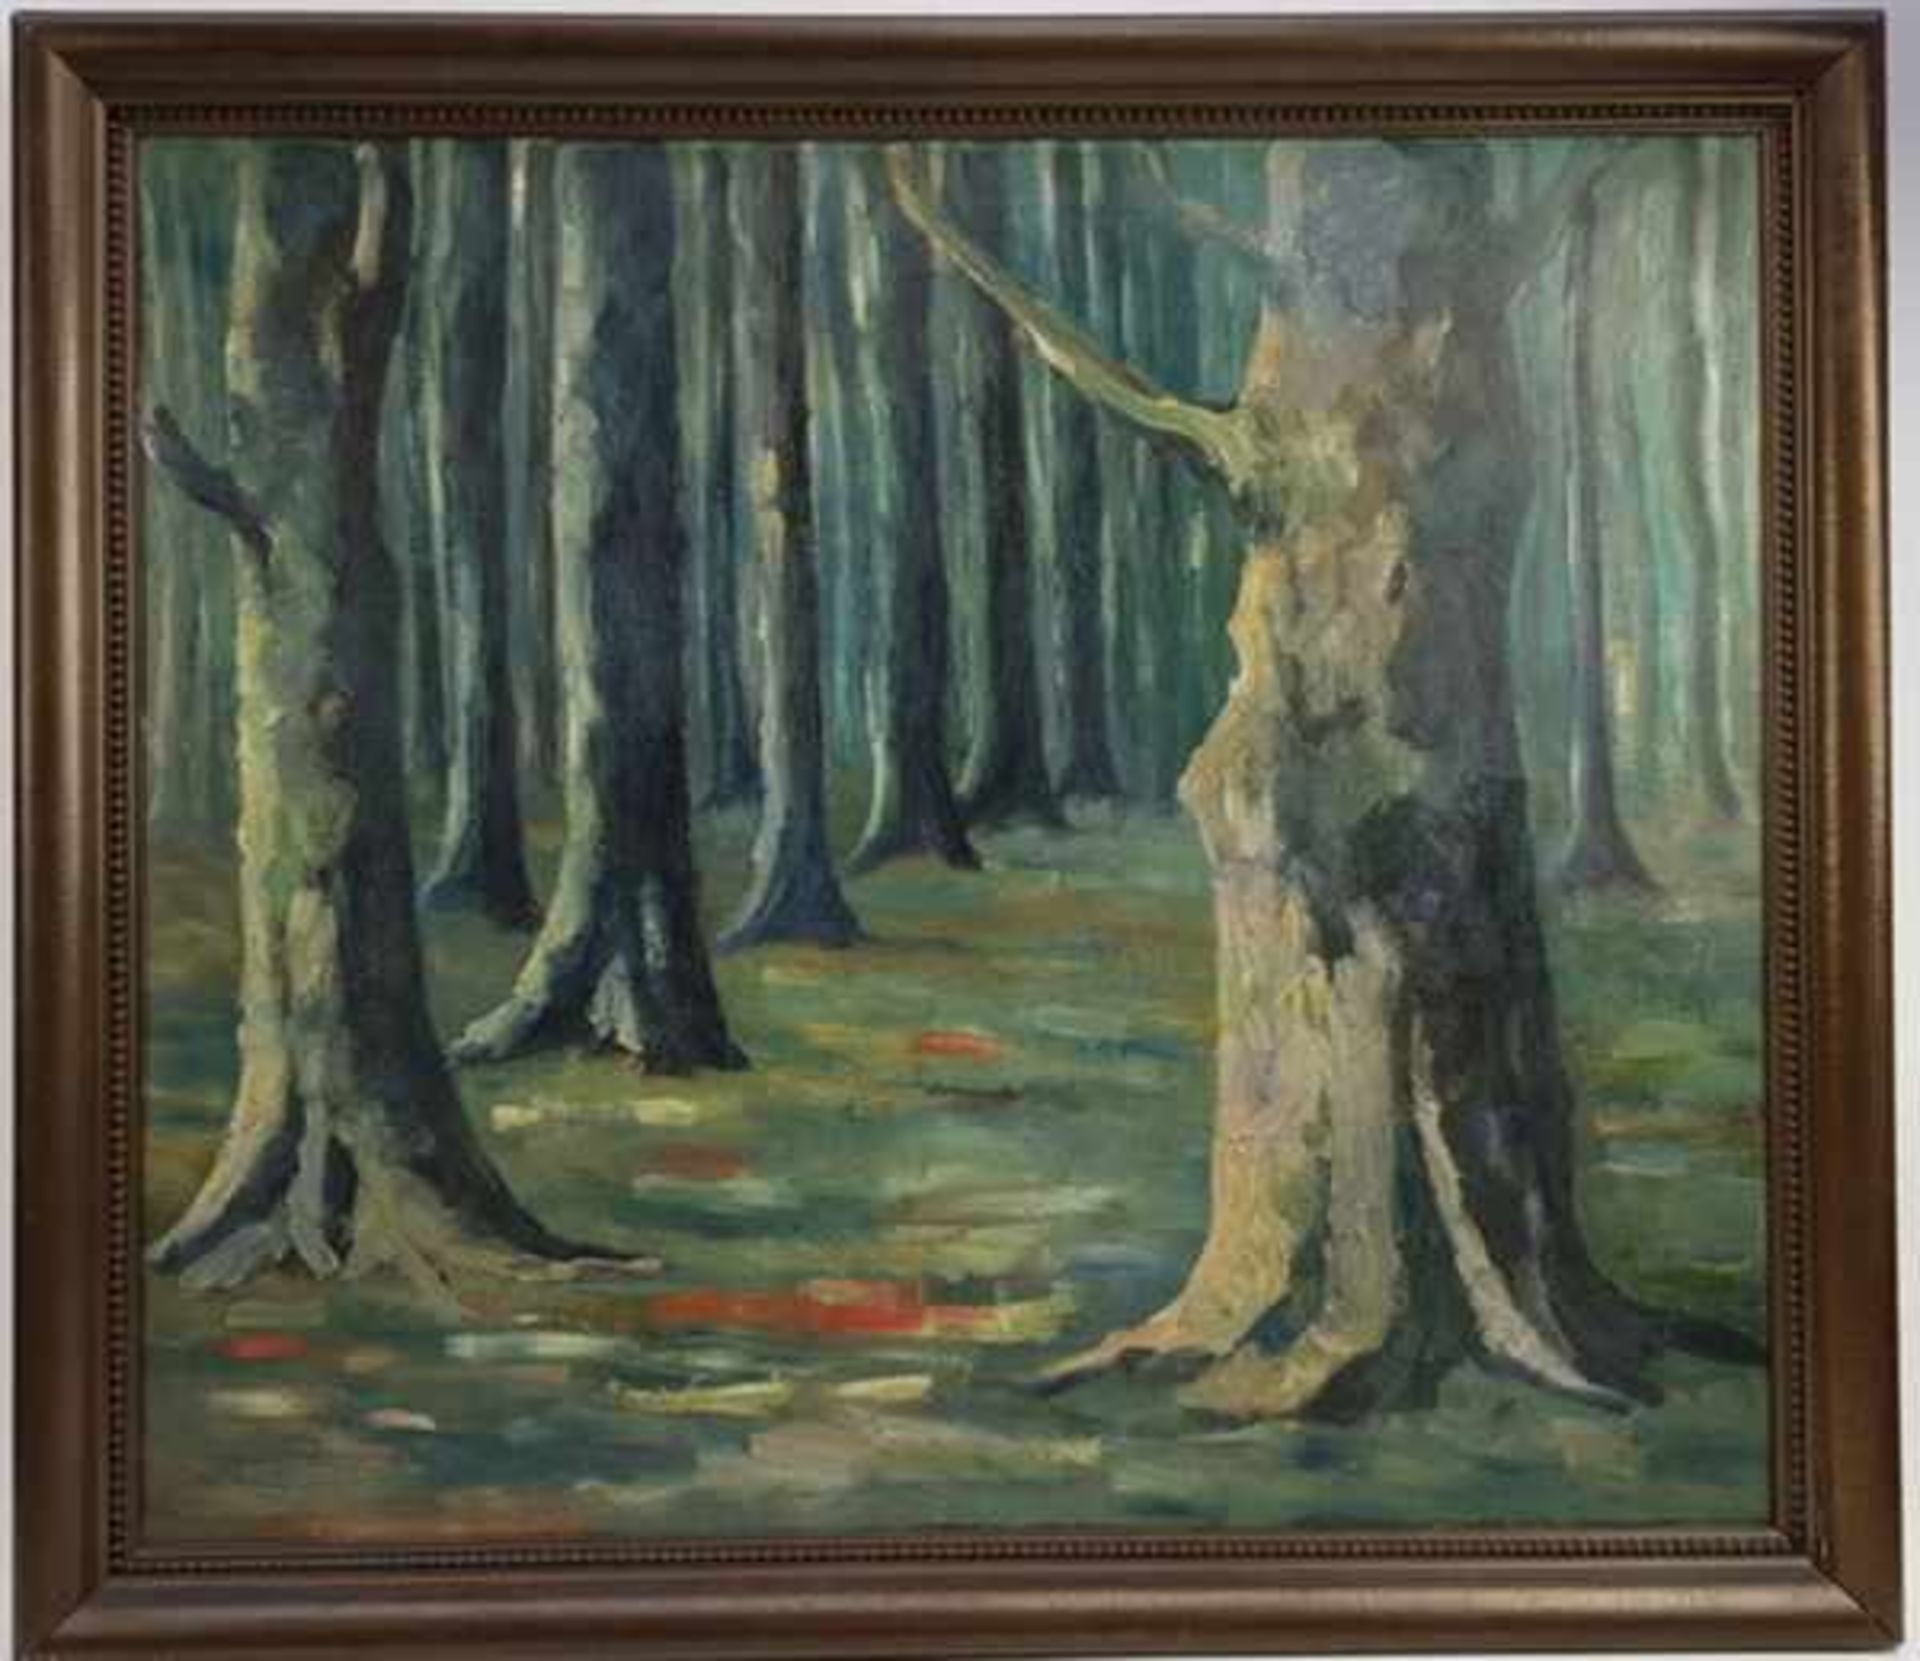 (Kunst) Olieverf schilderij op doek gesigneerd op achterzijde: Schouten. 20e eeuw.Olieverf